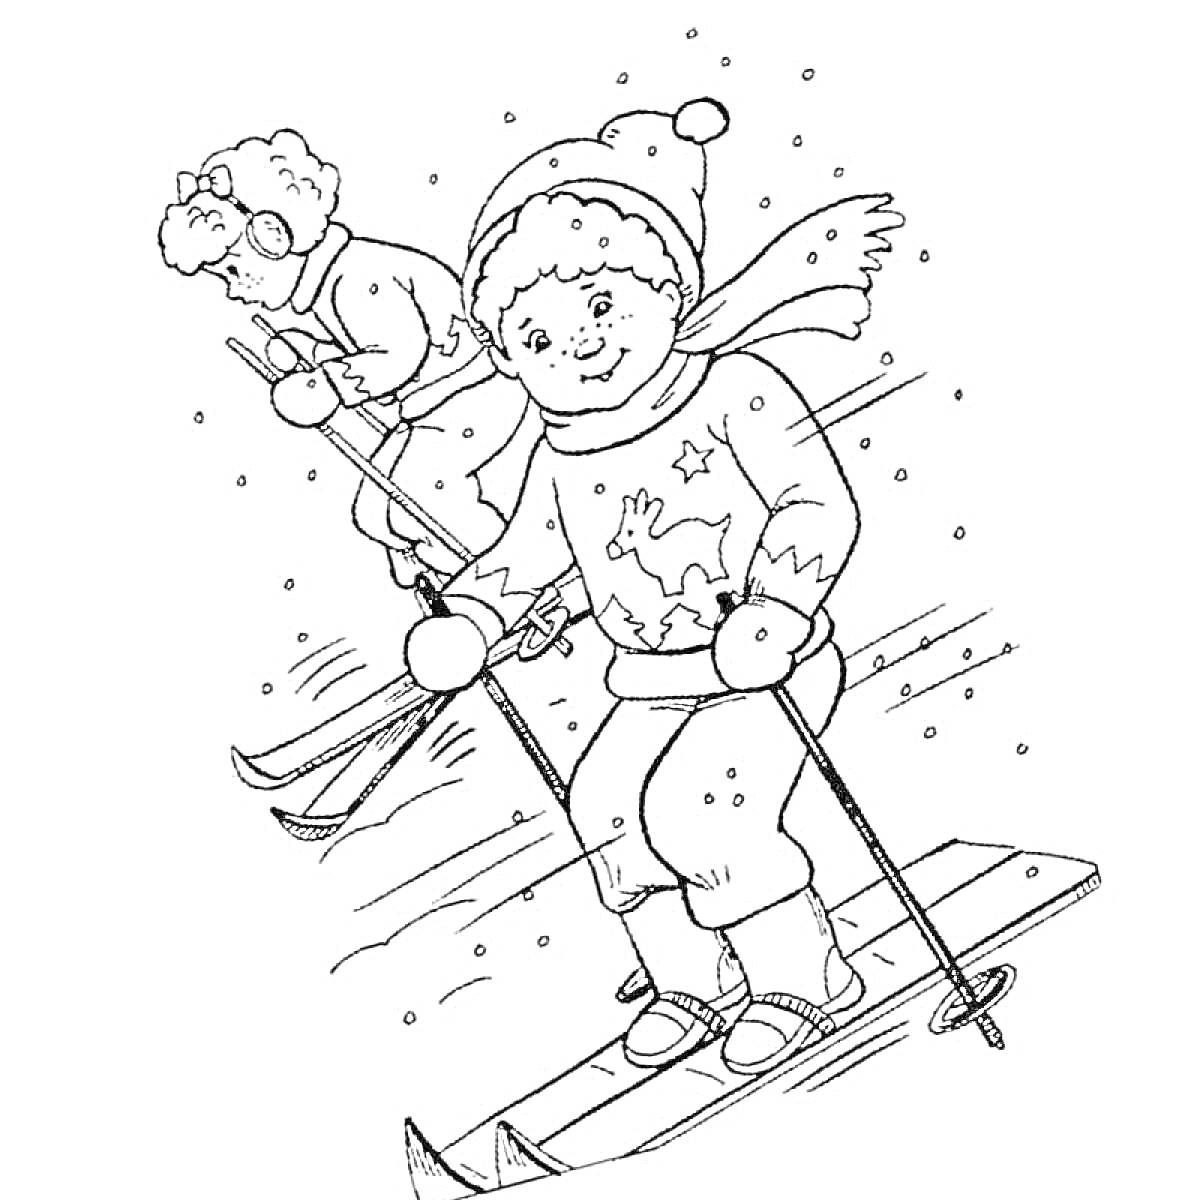 Раскраска Дети, катающиеся на лыжах зимой. Два ребёнка на лыжах, один ребёнок впереди с зимней шапкой и шарфом, второй ребёнок позади в очках и с лыжными палками, снежинки вокруг